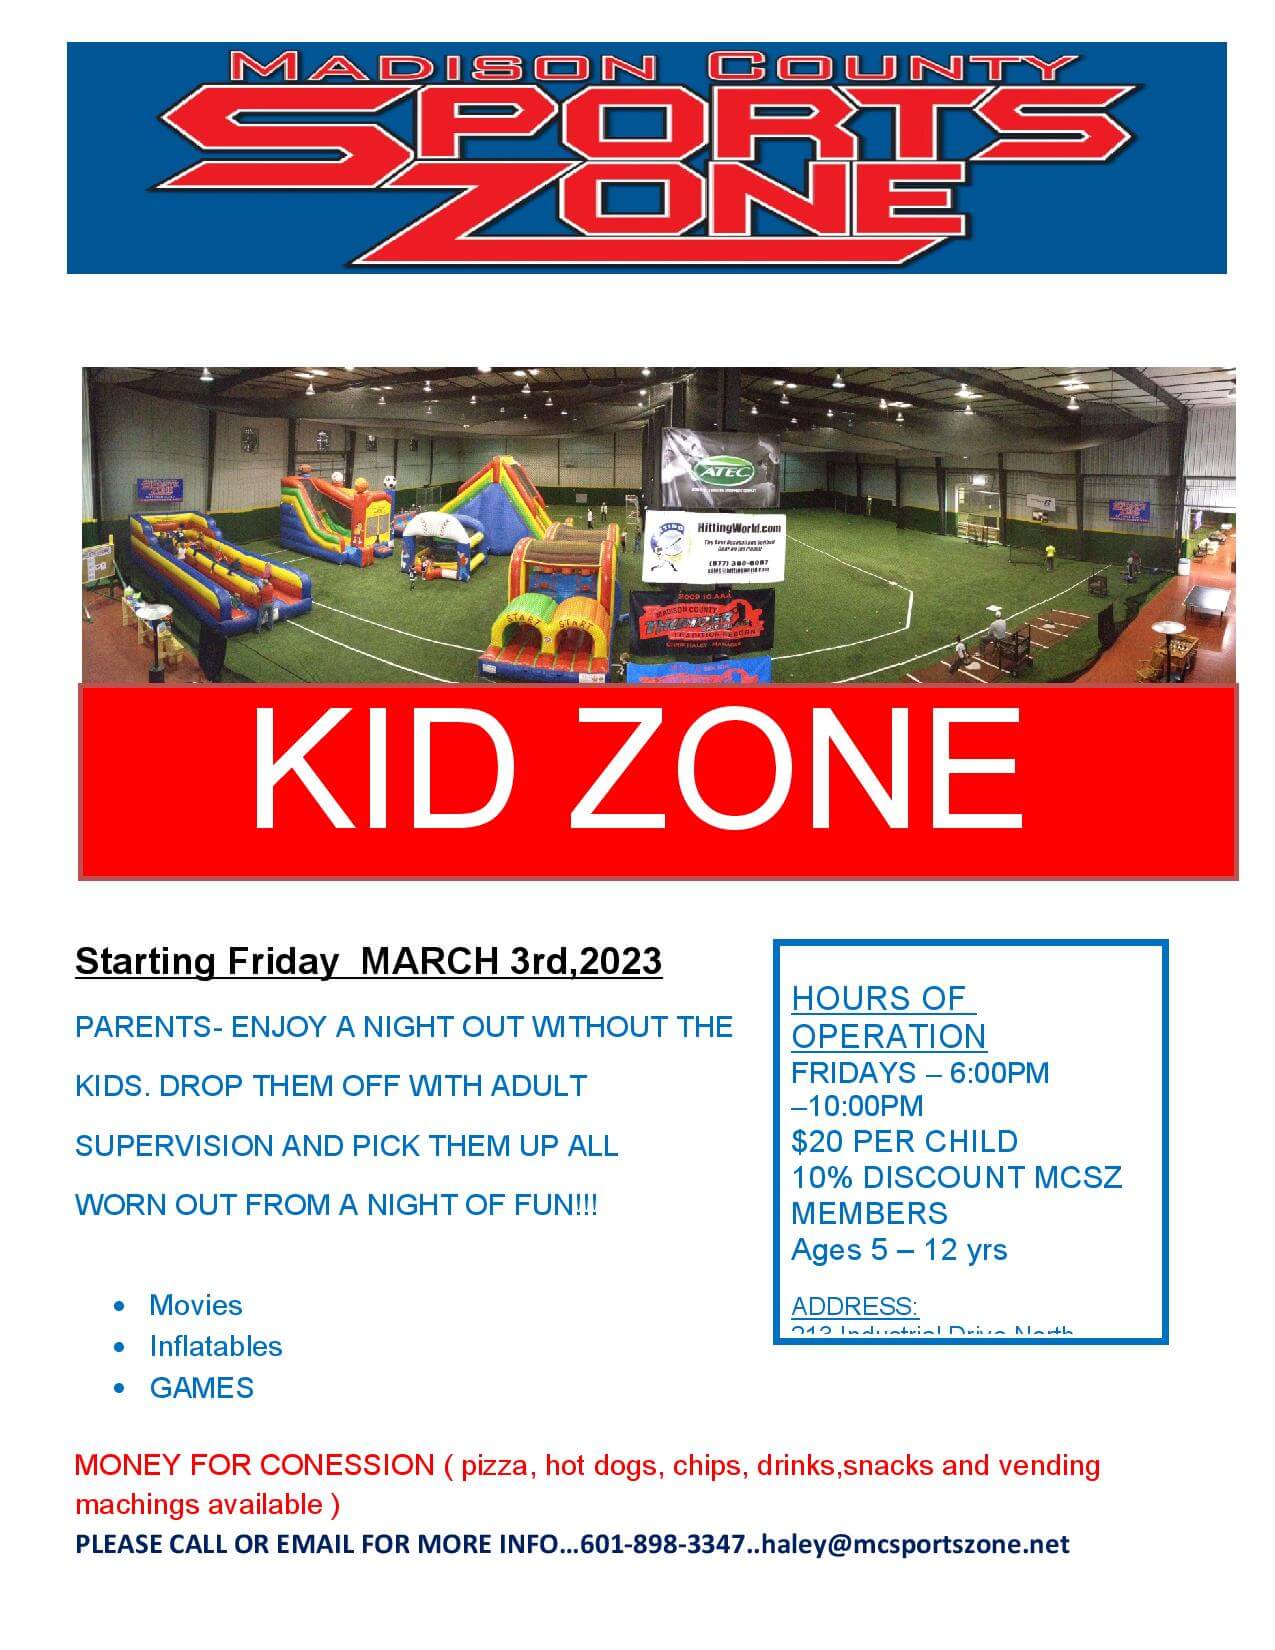 kid zone details